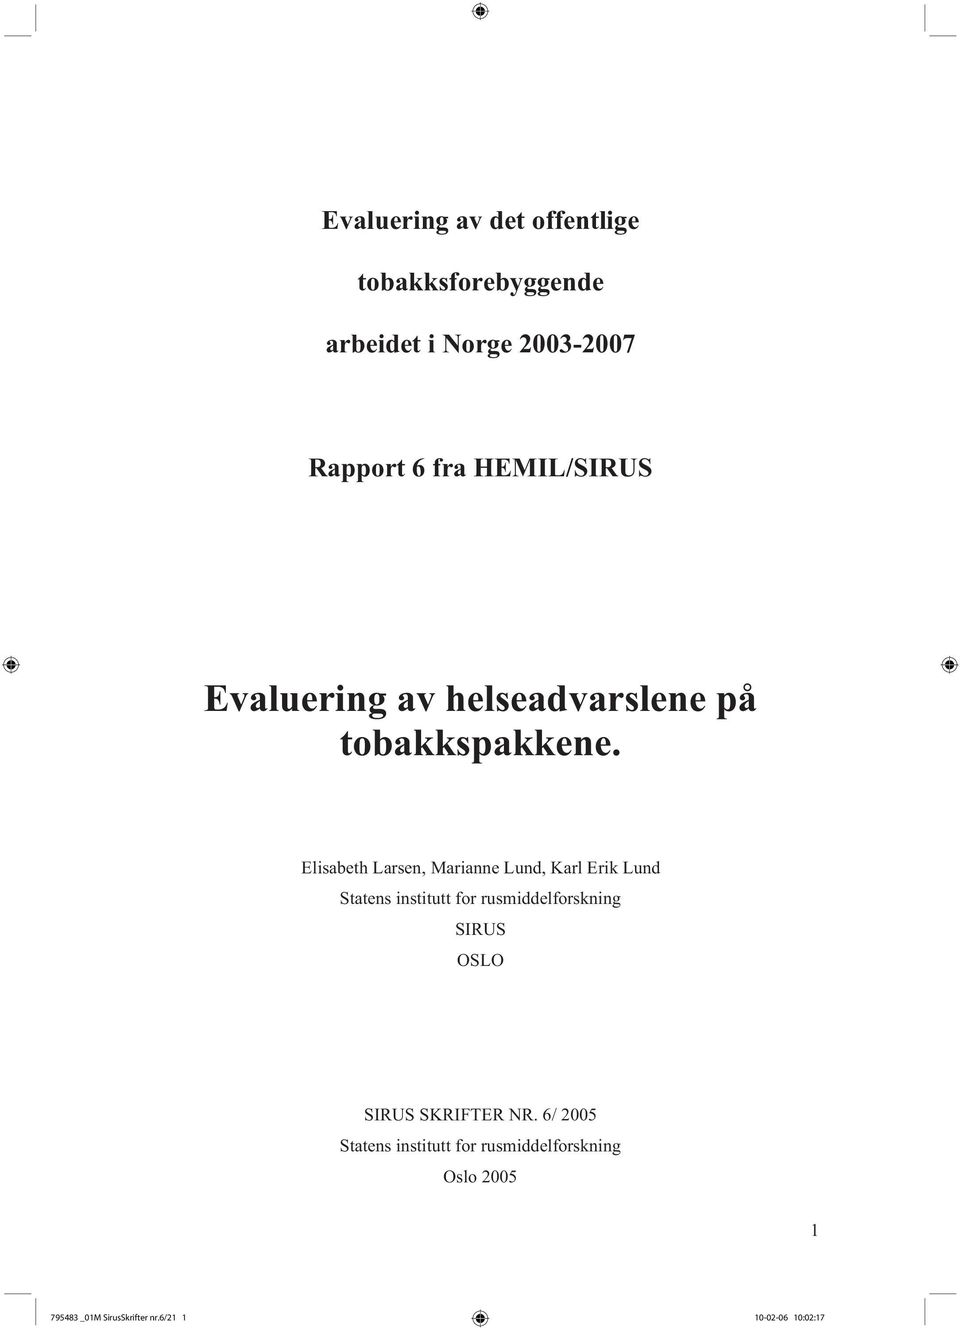 Elisabeth Larsen, Marianne Lund, Karl Erik Lund Statens institutt for rusmiddelforskning SIRUS